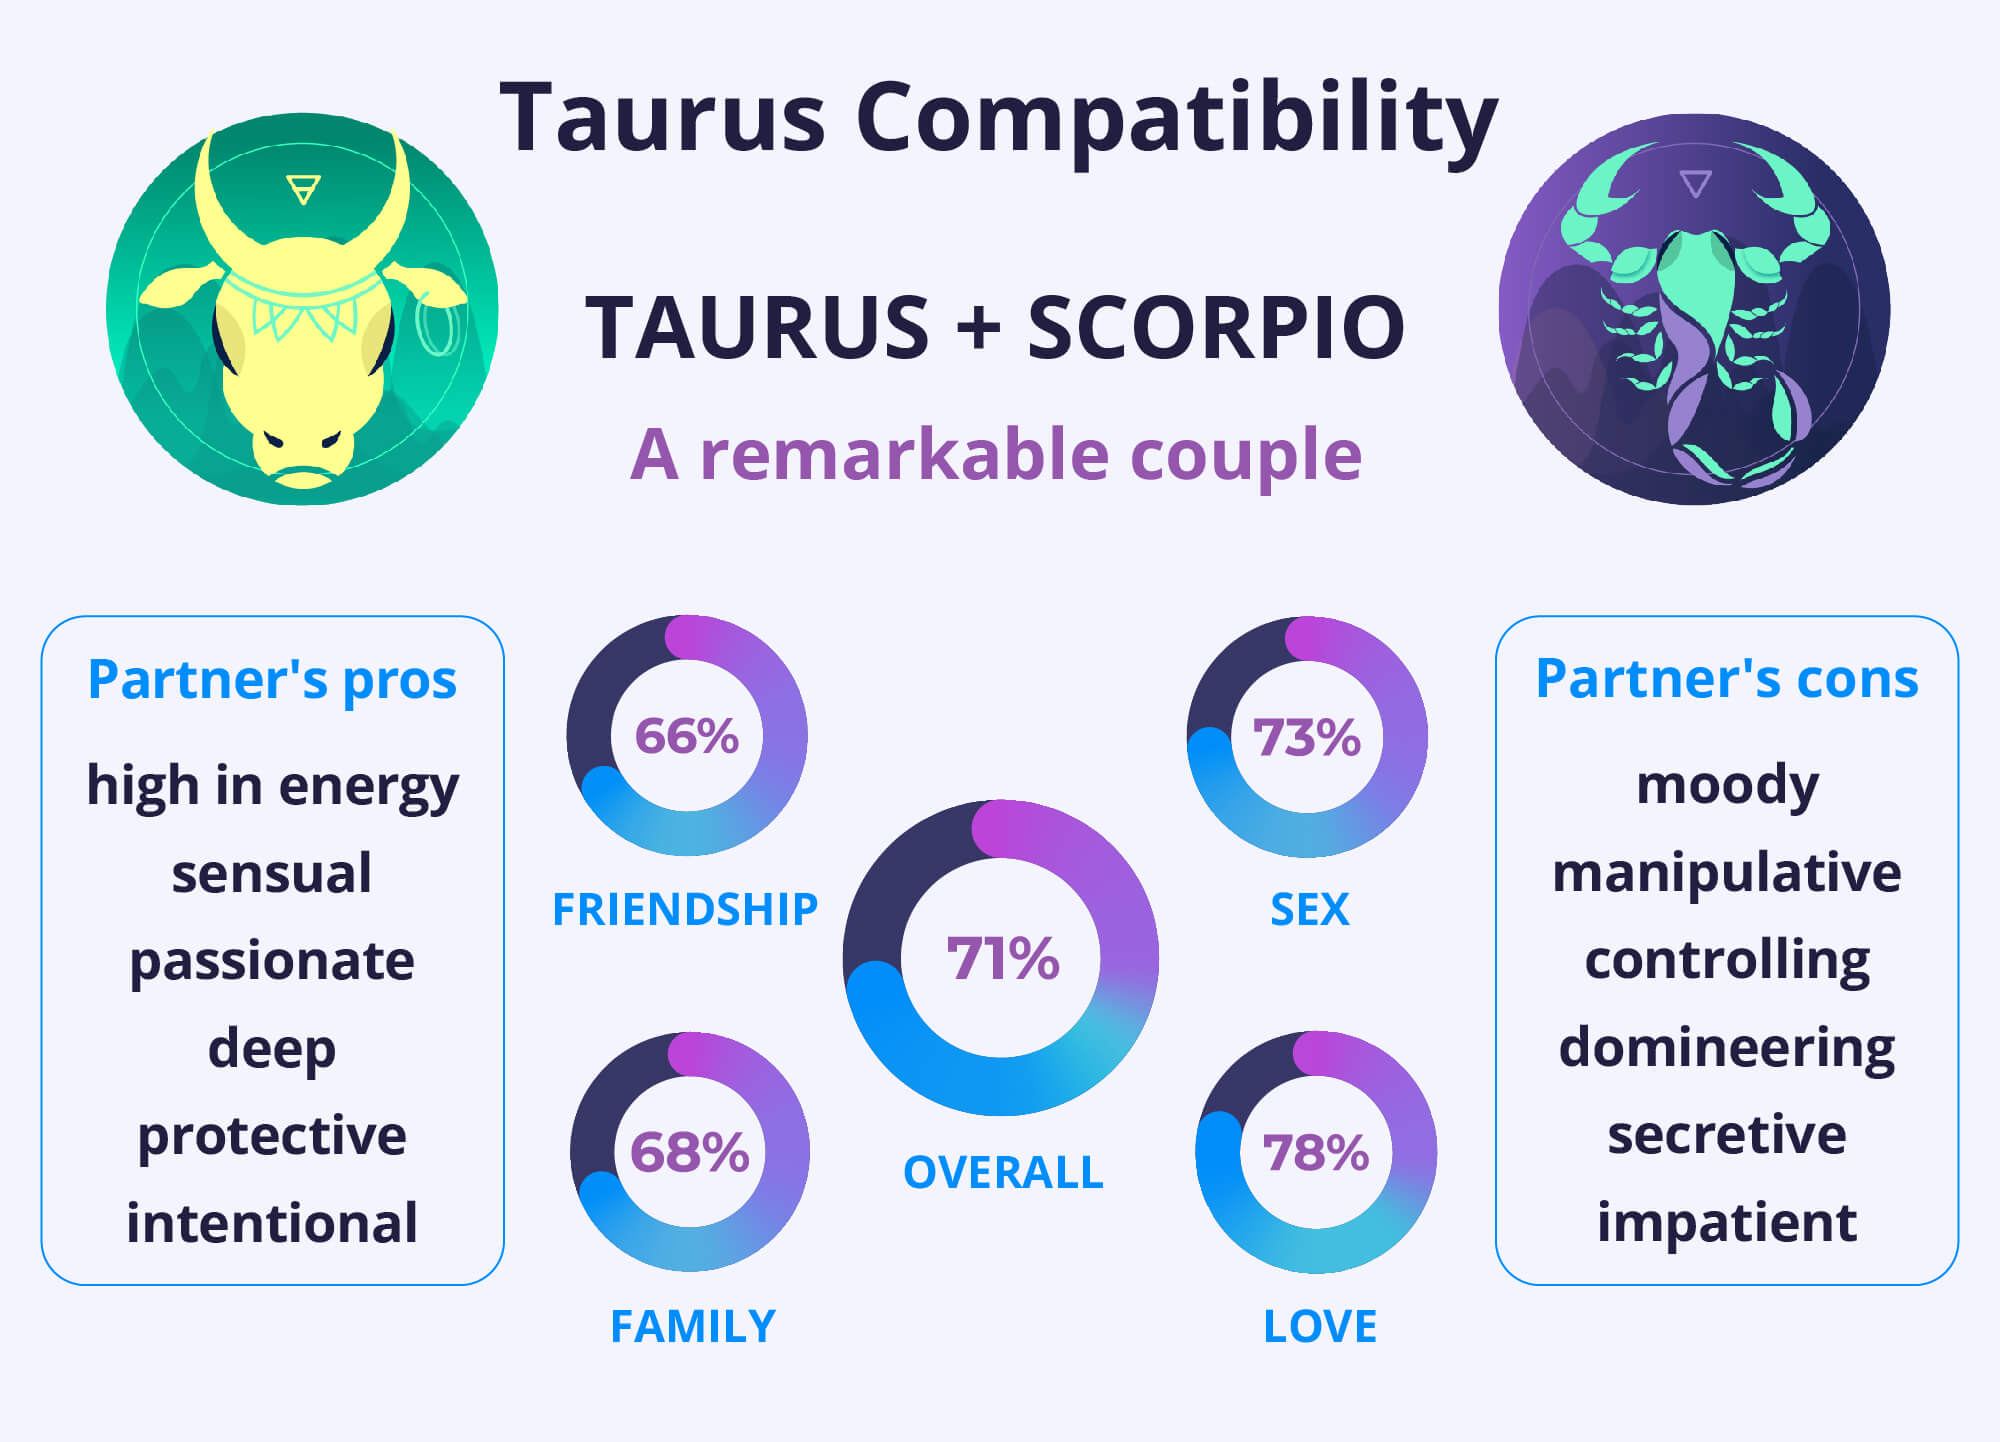 Taurus and Taurus Compatibility Chart